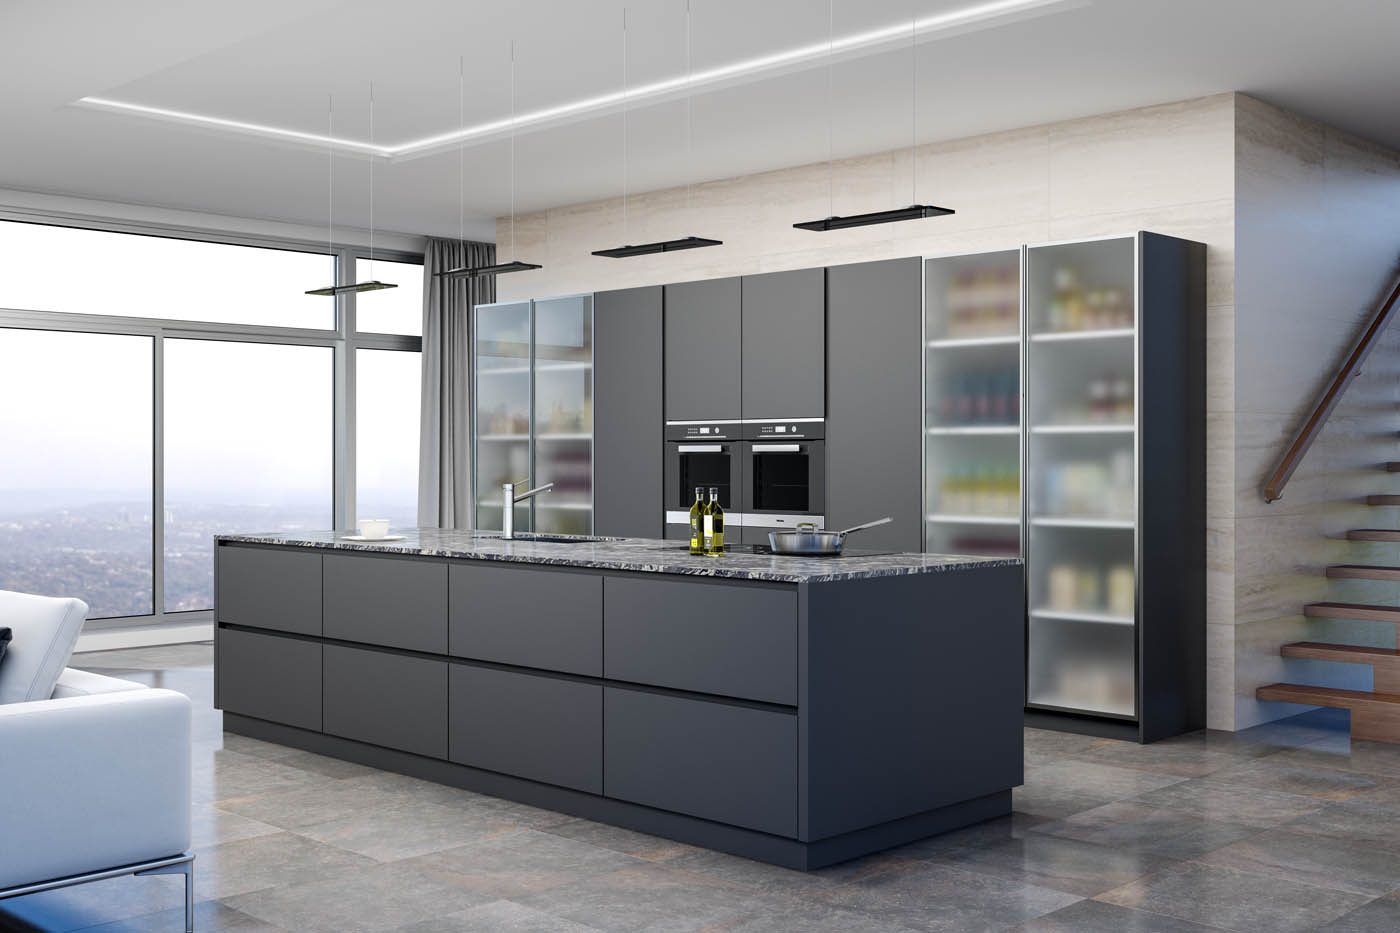 Imagen realizada con infografía 3D para la representación de una cocina de diseño y alta calidad